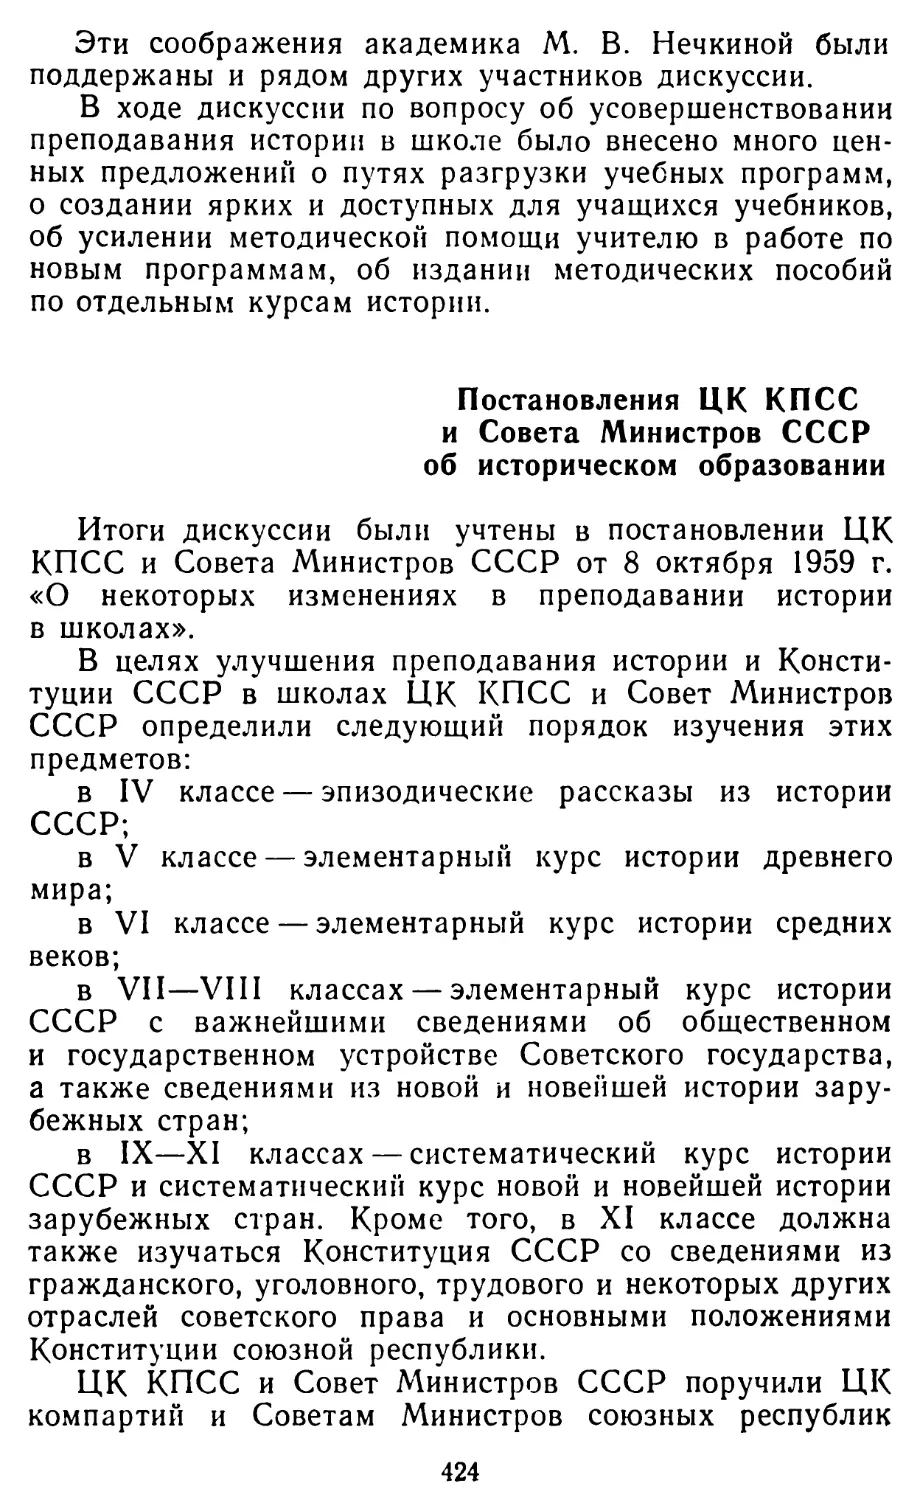 Постановления ЦК КПСС и Совета Министров СССР об историческом образовании